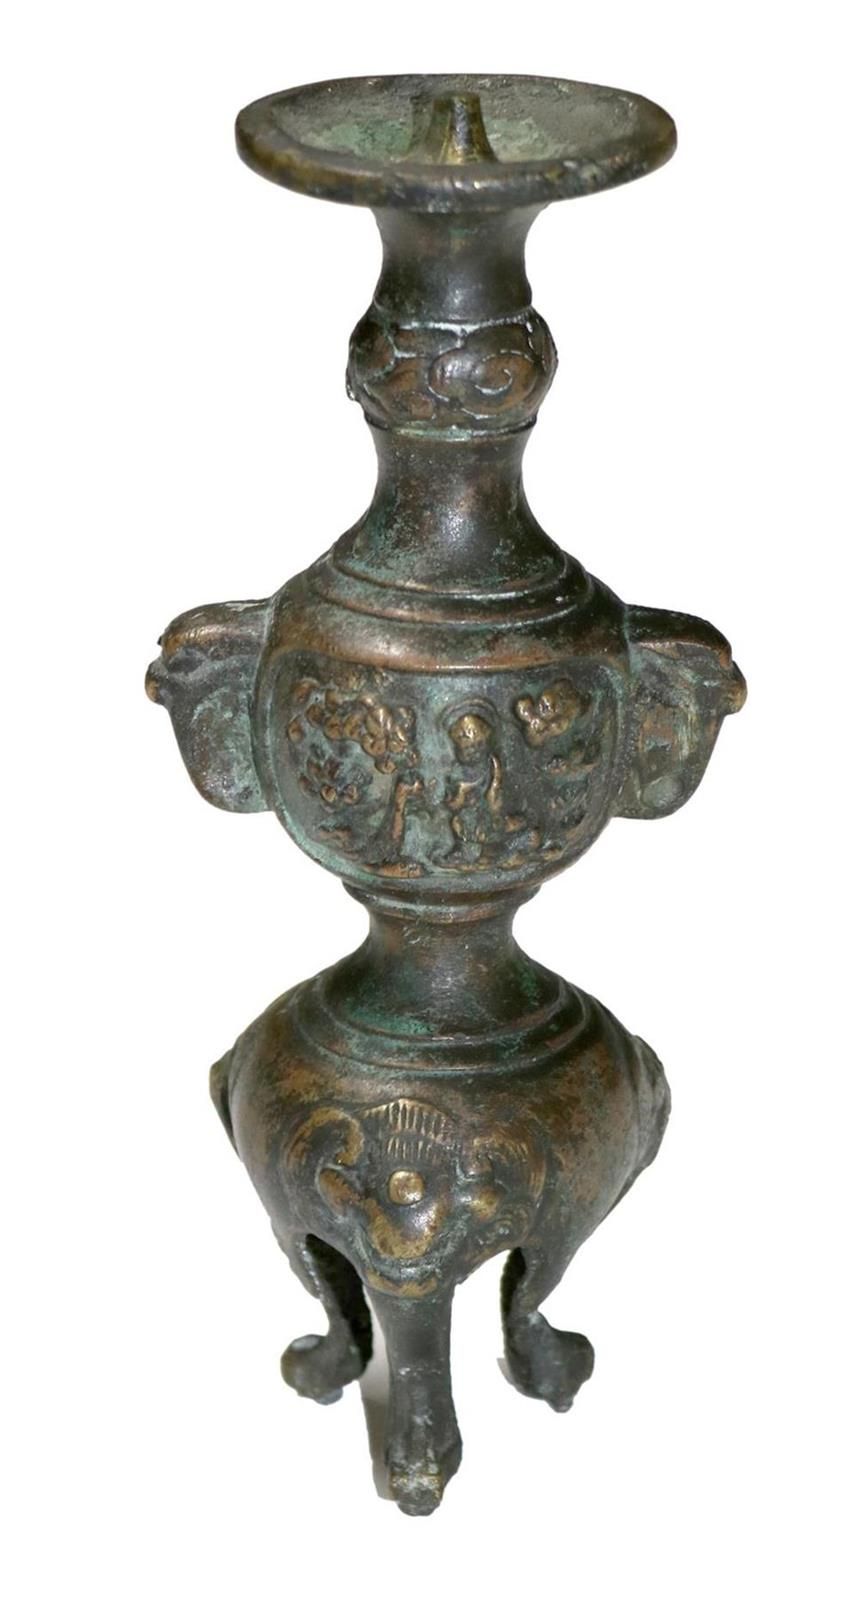 Ritualgefäß, 可能是中国 17/18世纪 古代，可能是三脚架上的祭坛烛台。两侧有动物形烛台，上方有把手。正面有 2 个花圃中的佛像图案。青铜，20 &hellip;